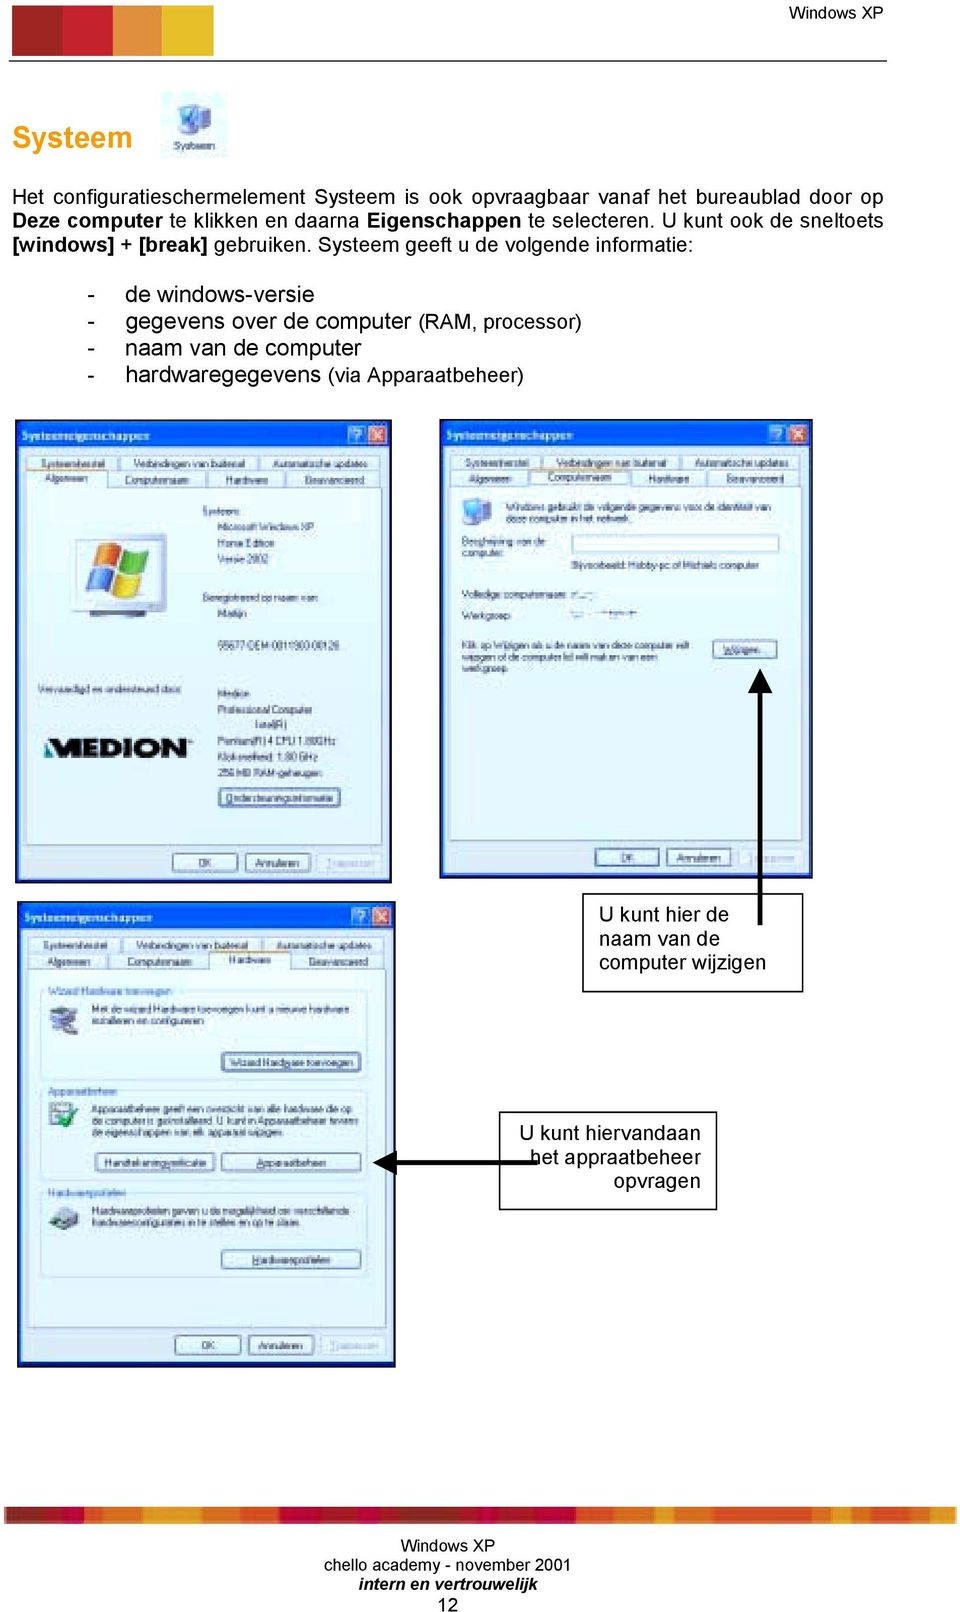 Systeem geeft u de volgende informatie: - de windows-versie - gegevens over de computer (RAM, processor) - naam van de